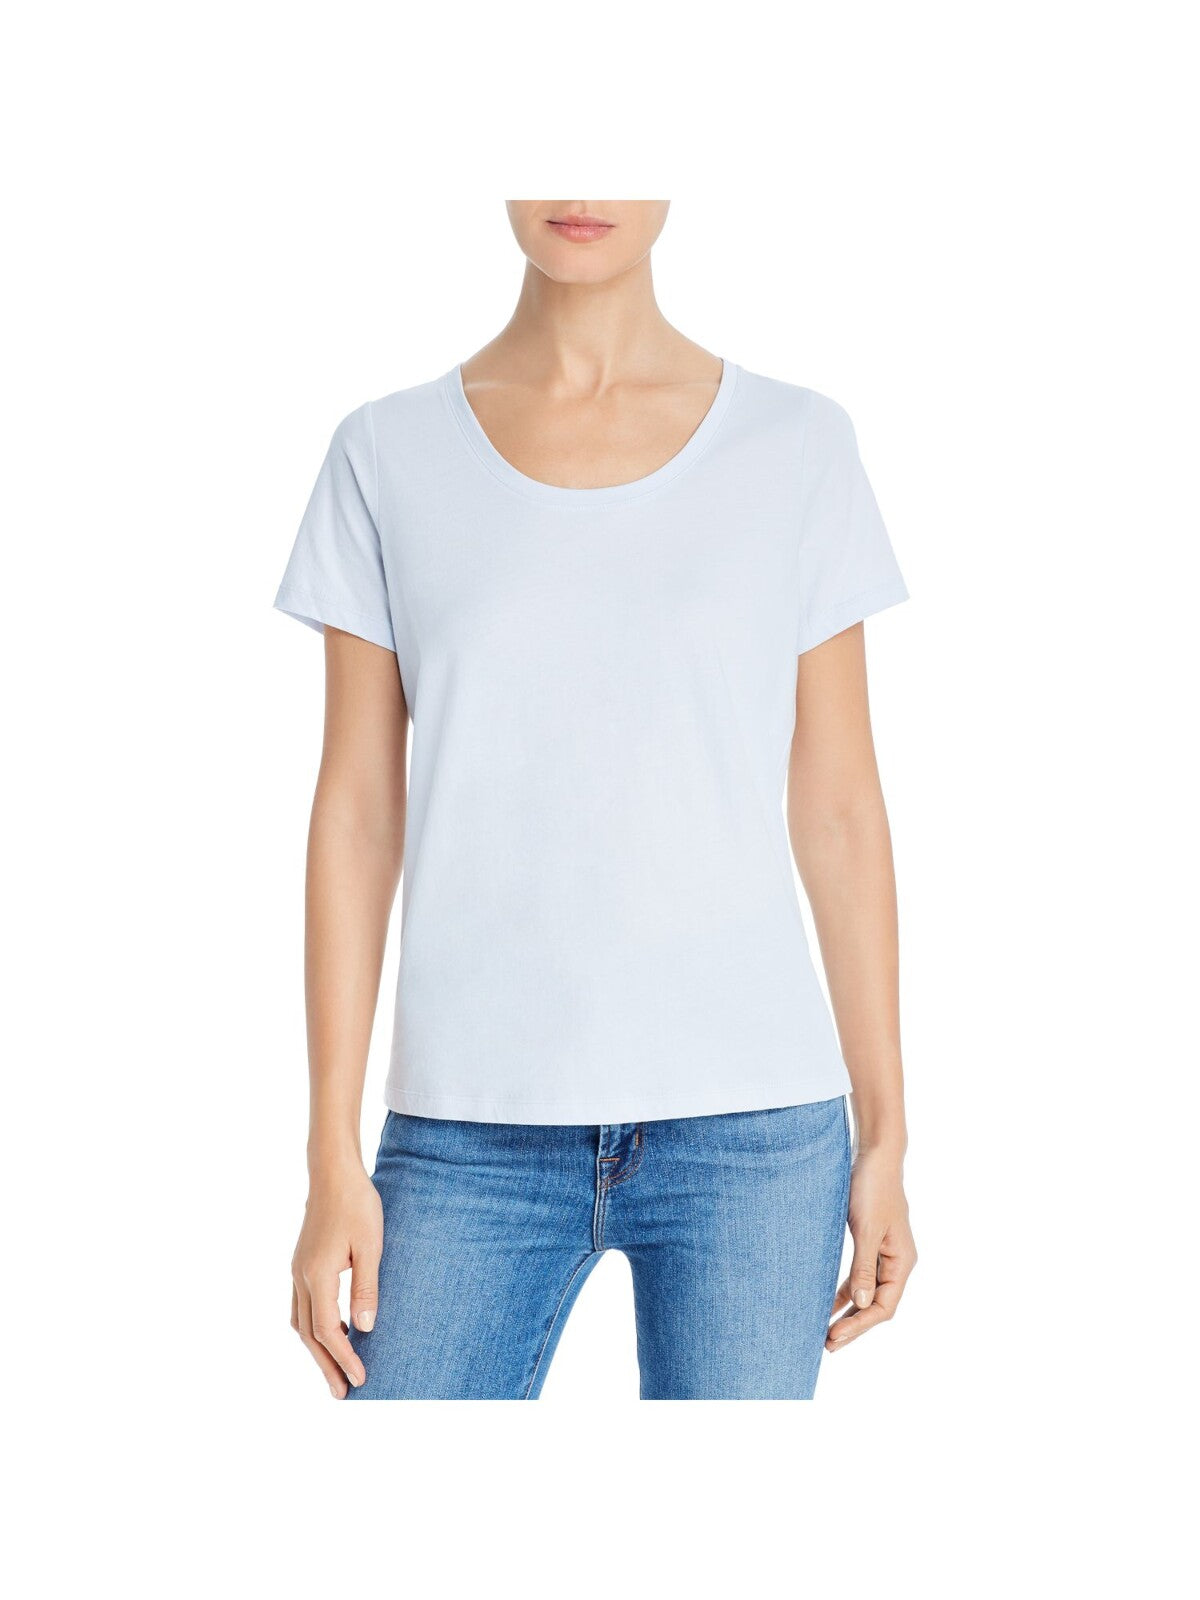 EILEEN FISHER Womens Light Blue Short Sleeve Scoop Neck T-Shirt S